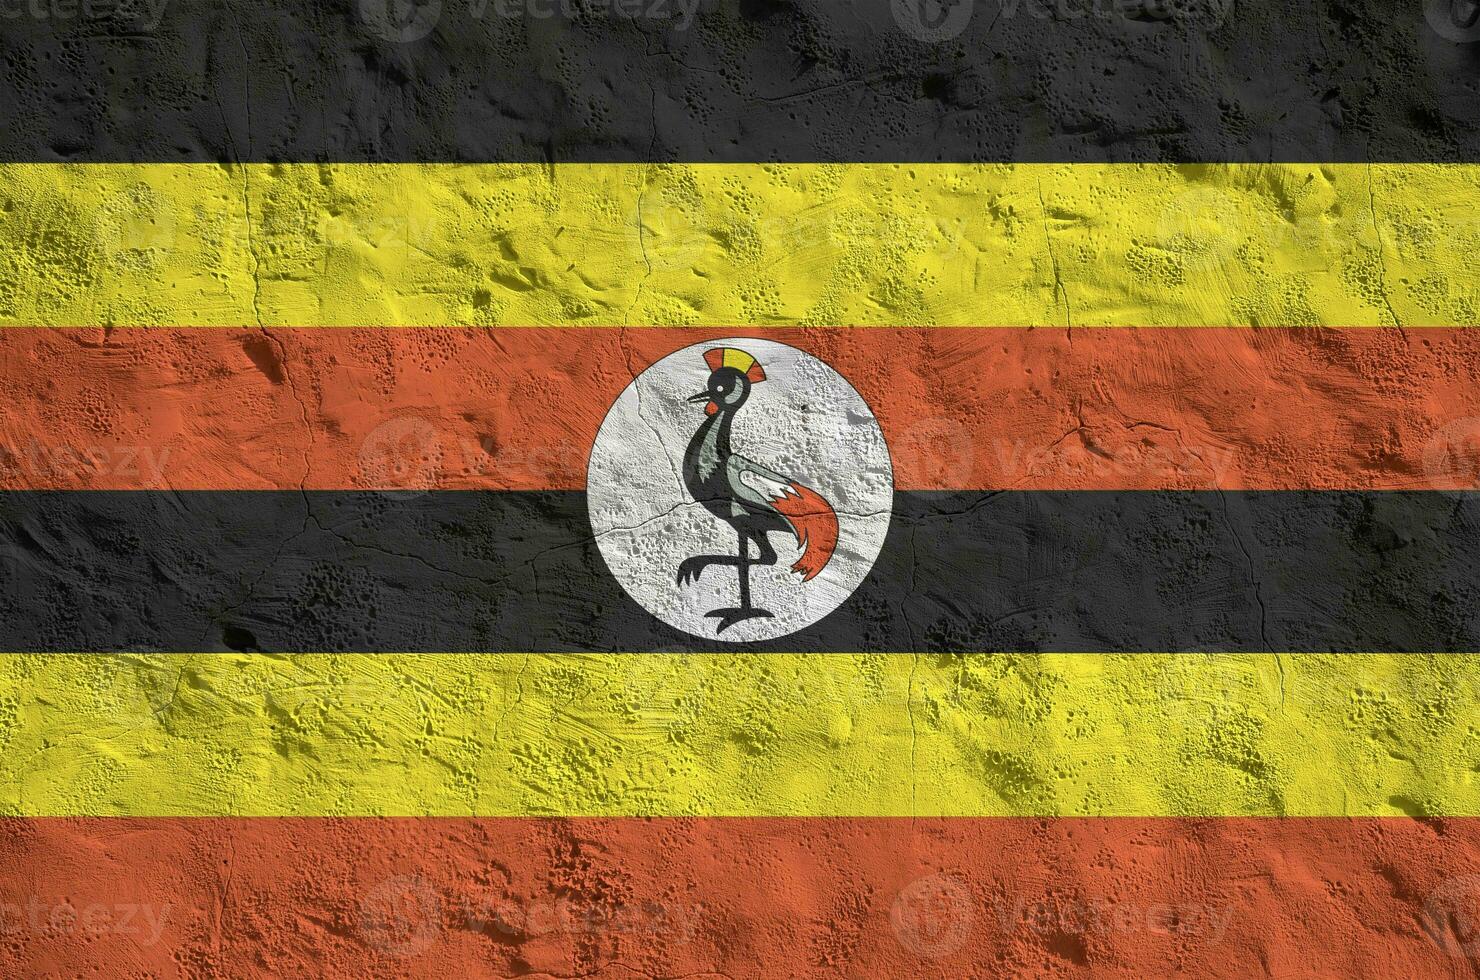 uganda flagga avbildad i ljus måla färger på gammal lättnad putsning vägg. texturerad baner på grov bakgrund foto